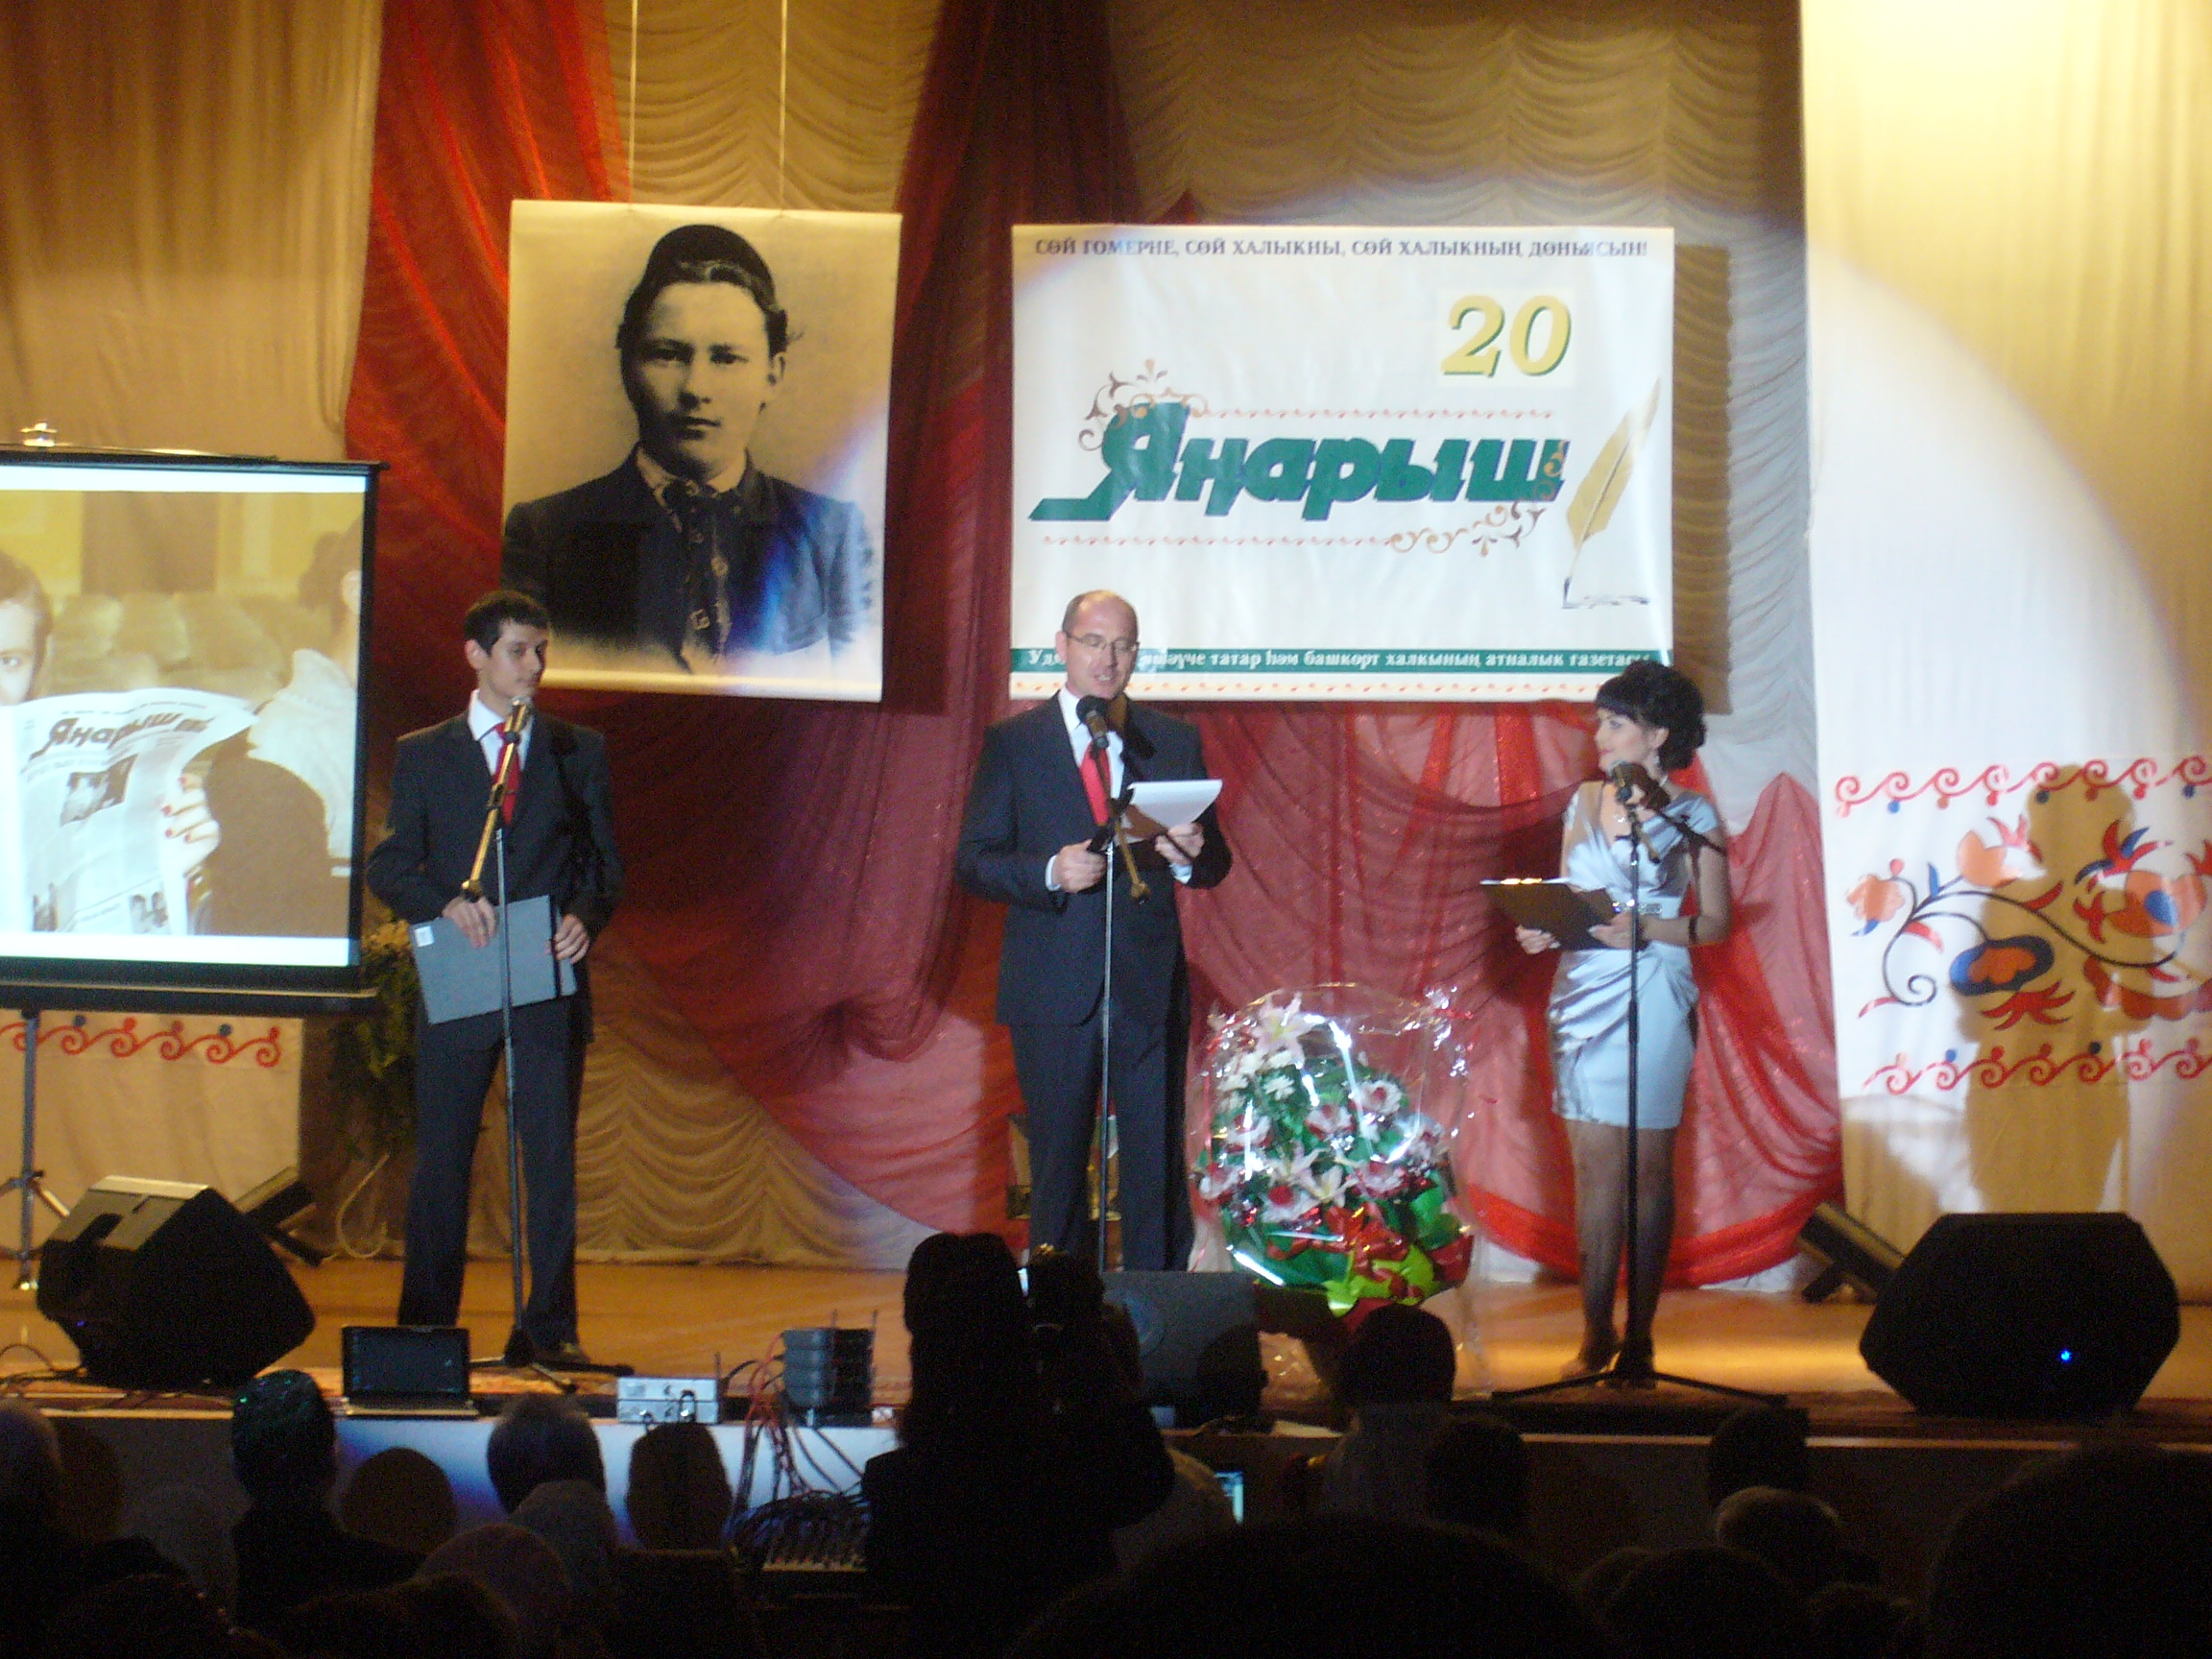 Татарская газета «Янарыш» в Удмуртии отпраздновала своё 20-летие